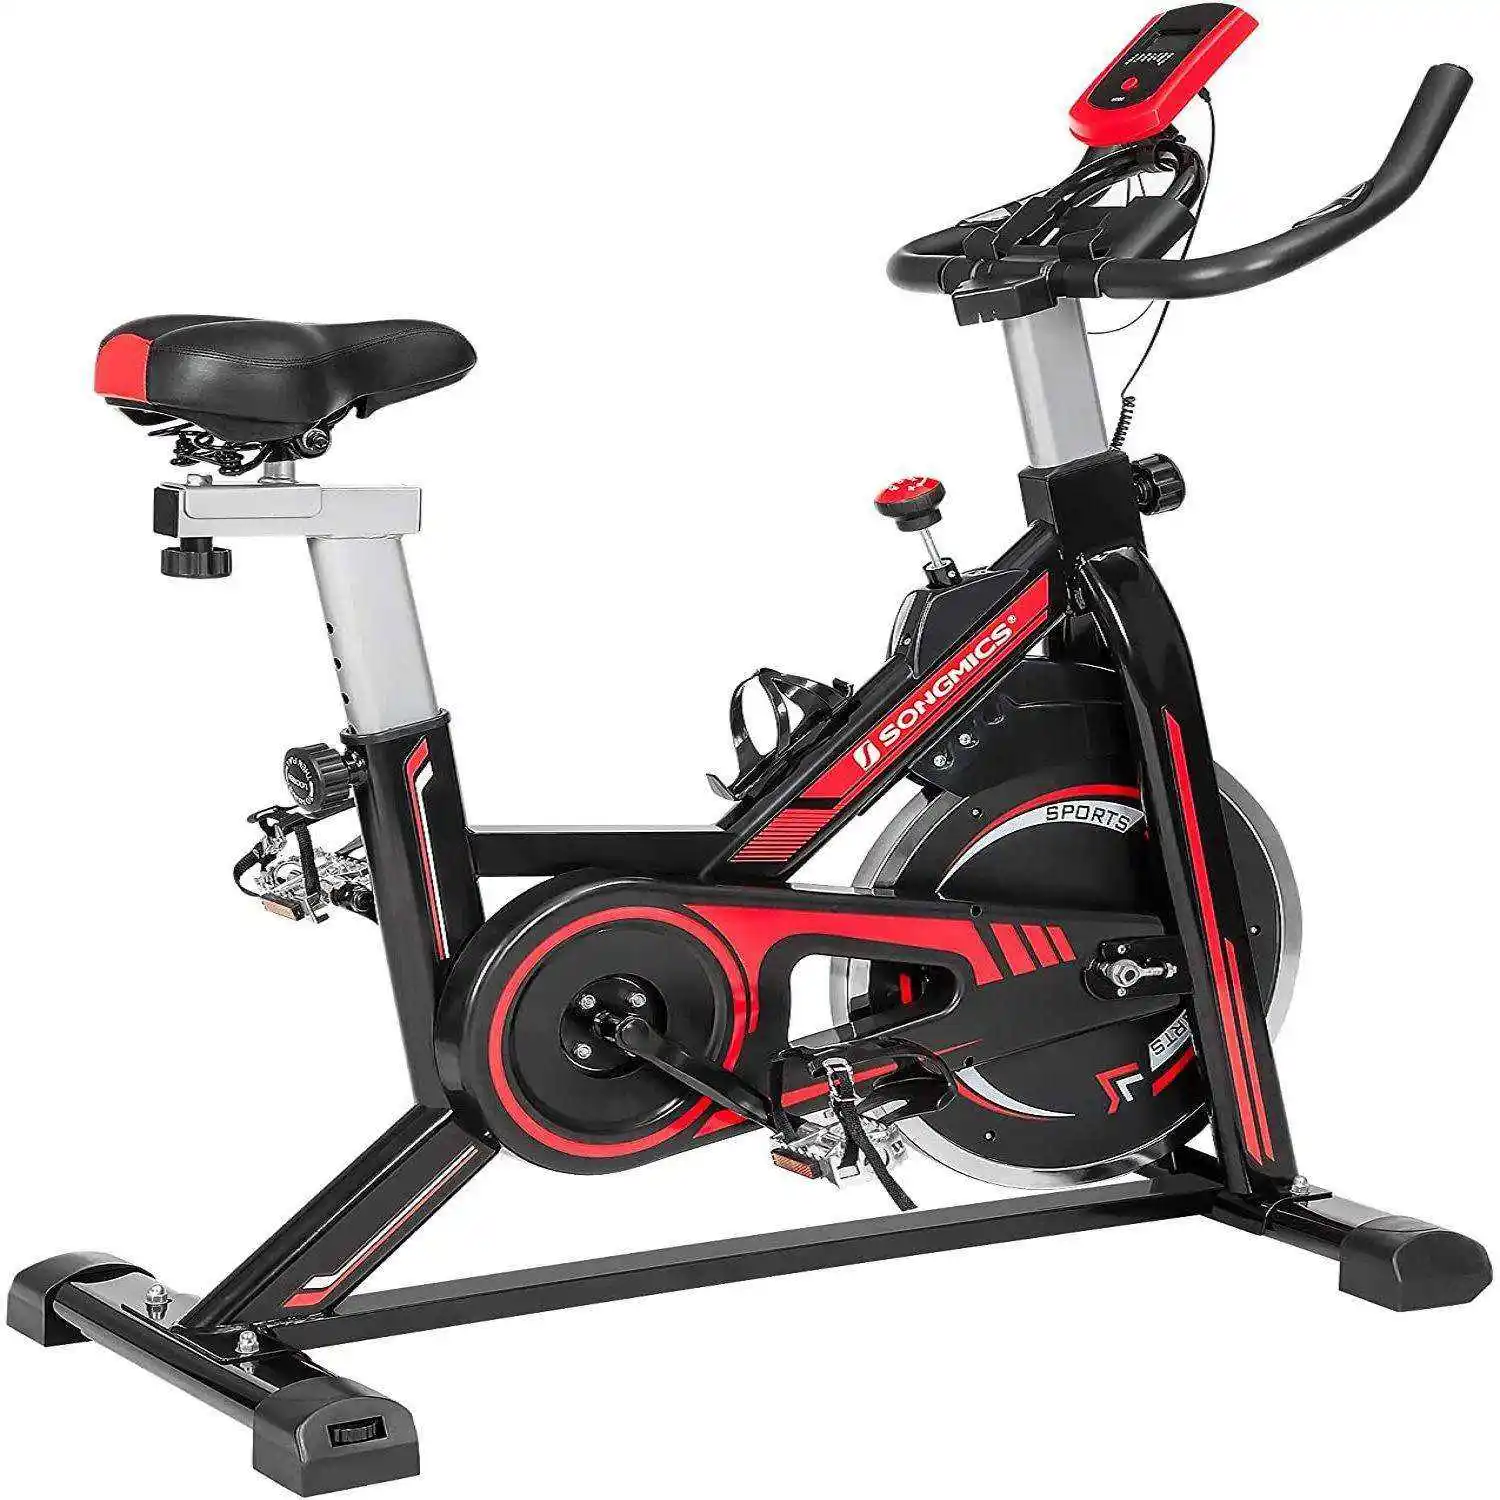 Bicicleta giratória para exercícios, bicicleta giratória estacionária com controle magnético para treinamento cardiovascular, best-seller